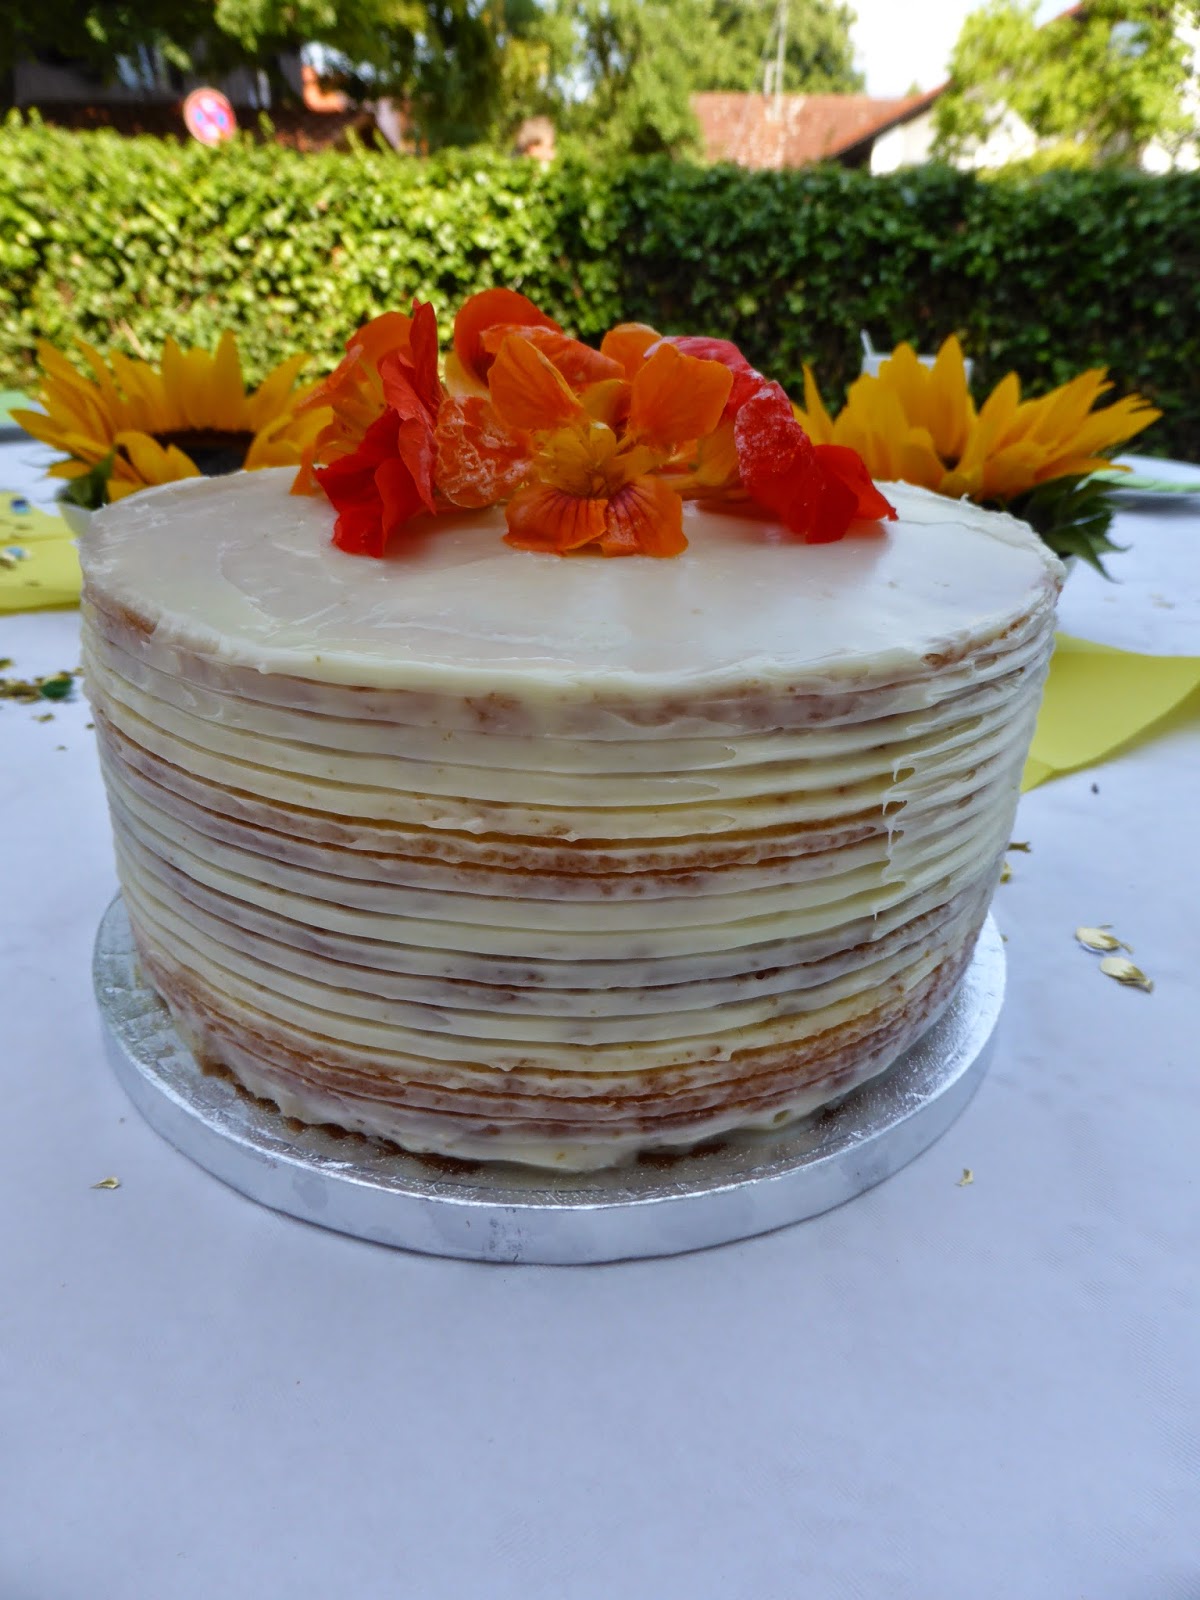 Karins leckerer Backzauber: Lemon Curd-Torte zu meinem Geburtstag